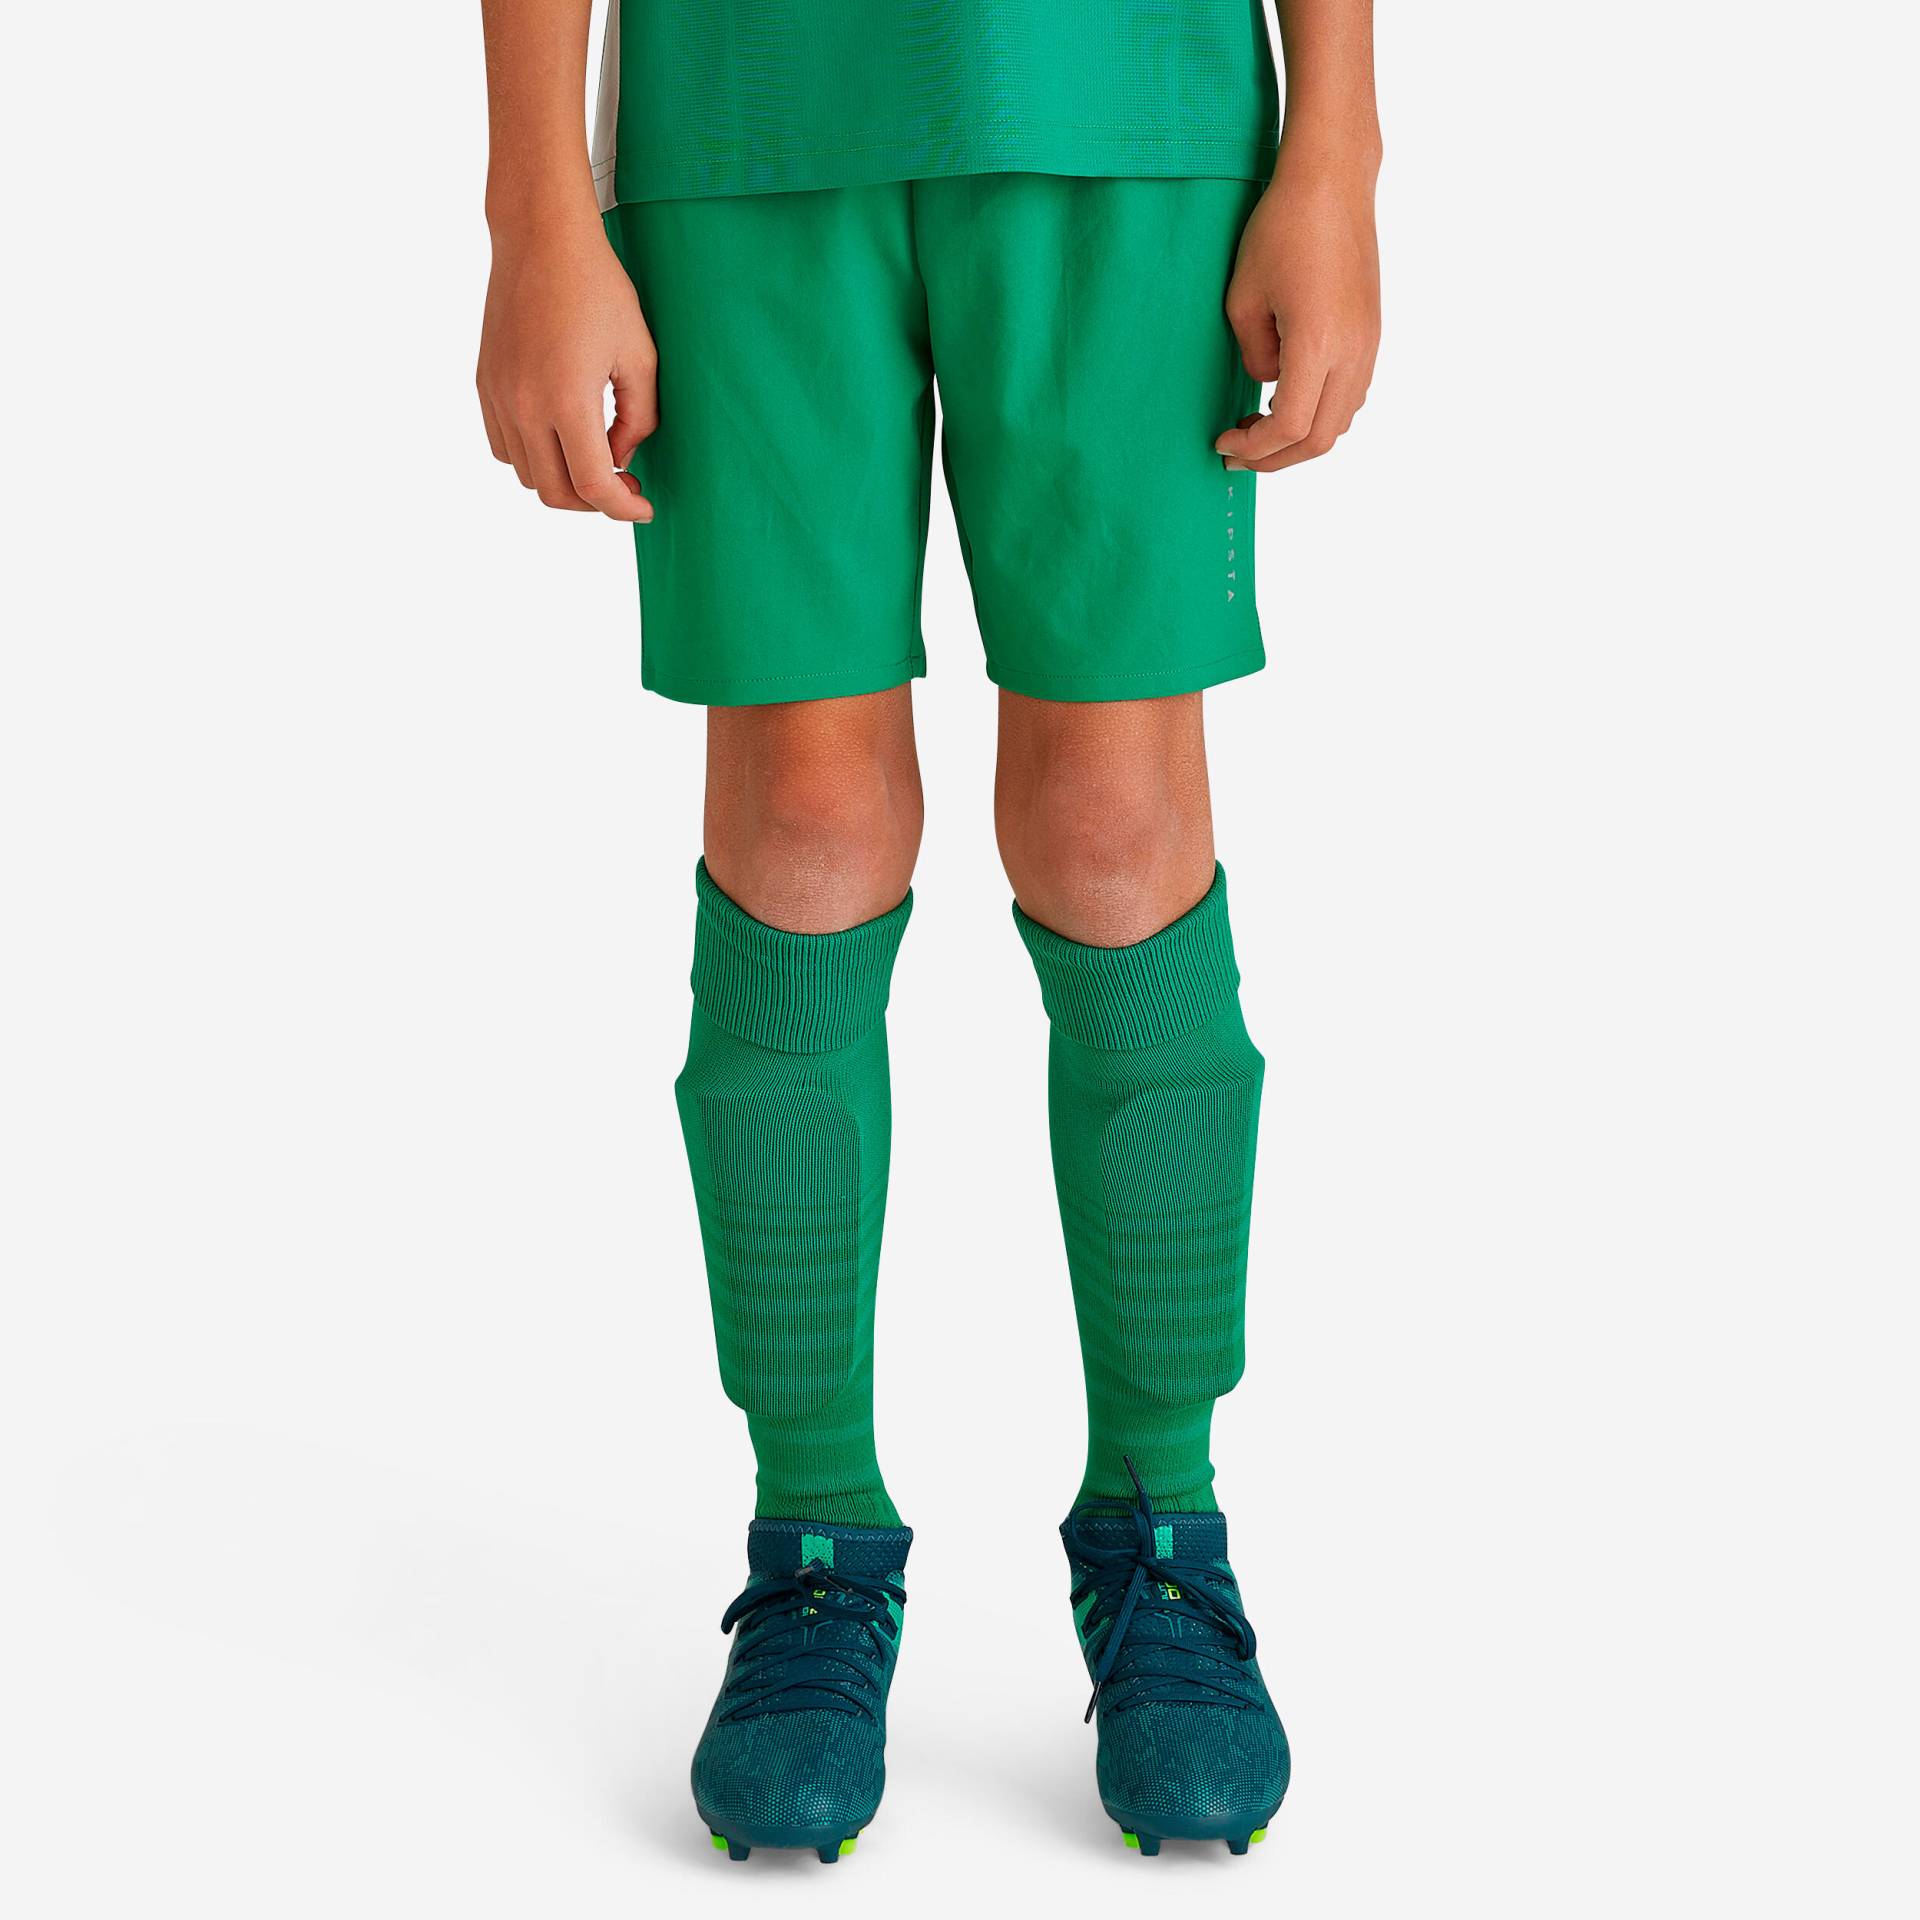 Kinder Fussball Shorts - VIRALTO Club grün von KIPSTA